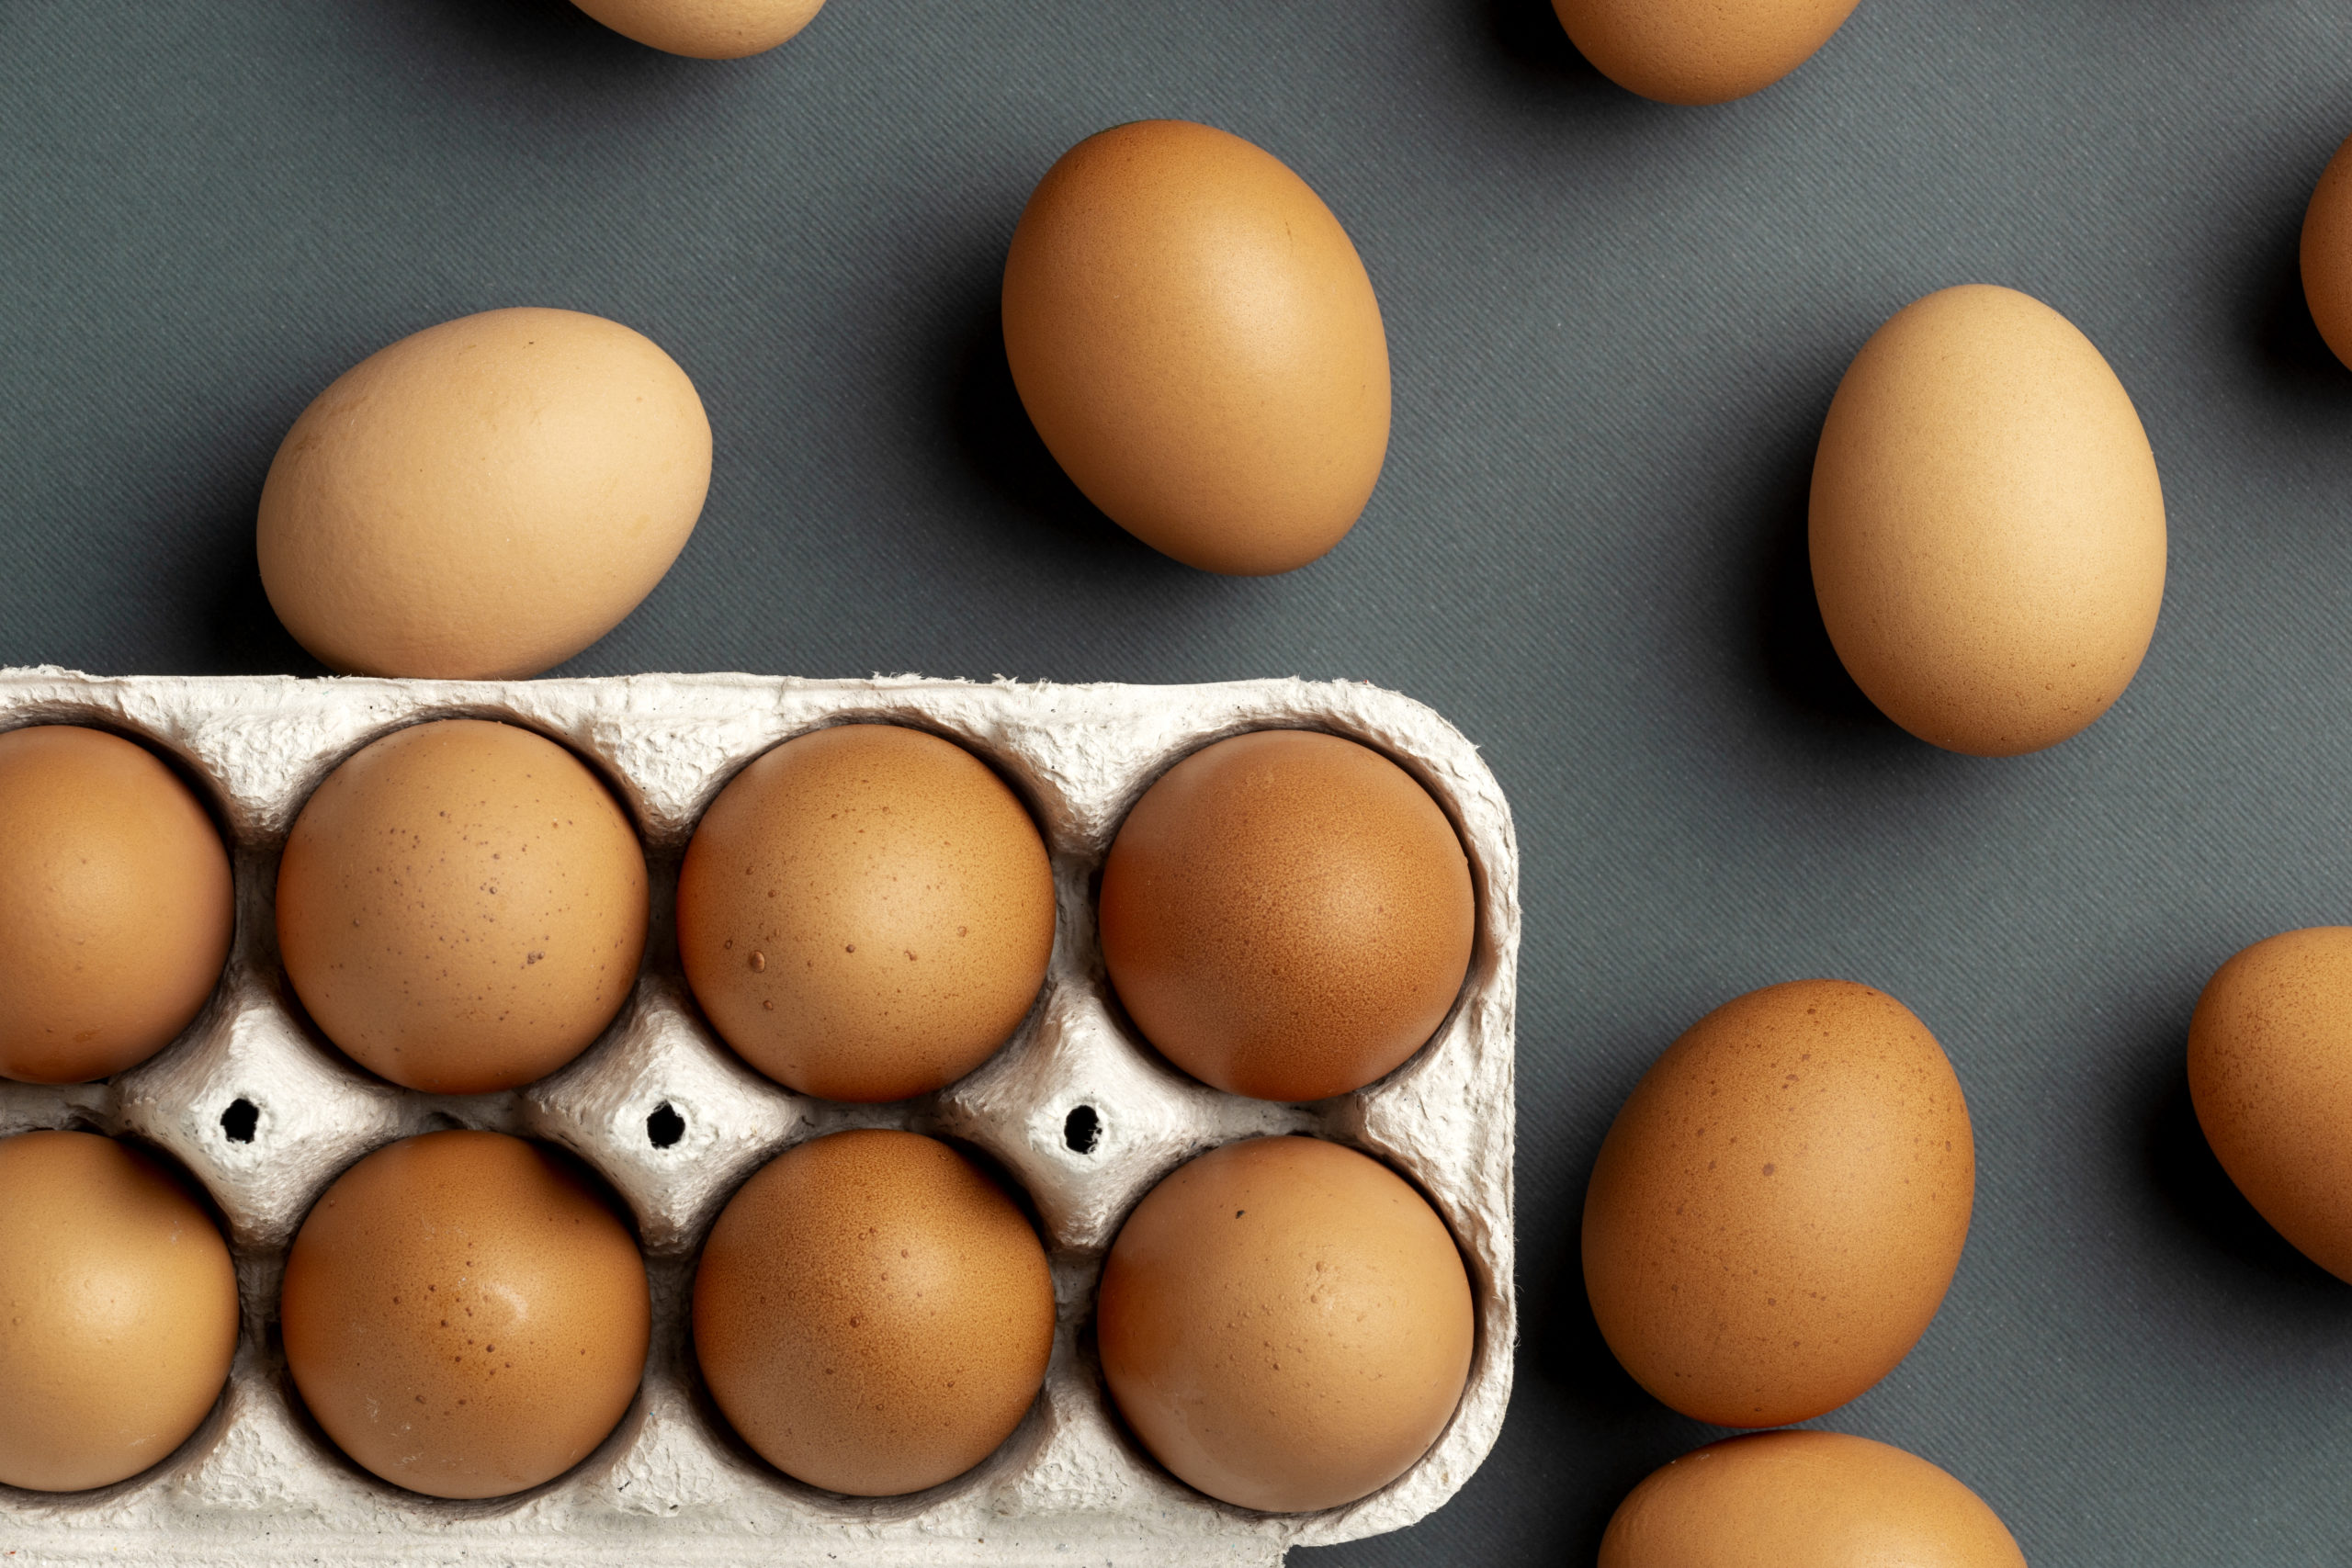 Цены на яйца в России идут на спад благодаря ценовым соглашениям